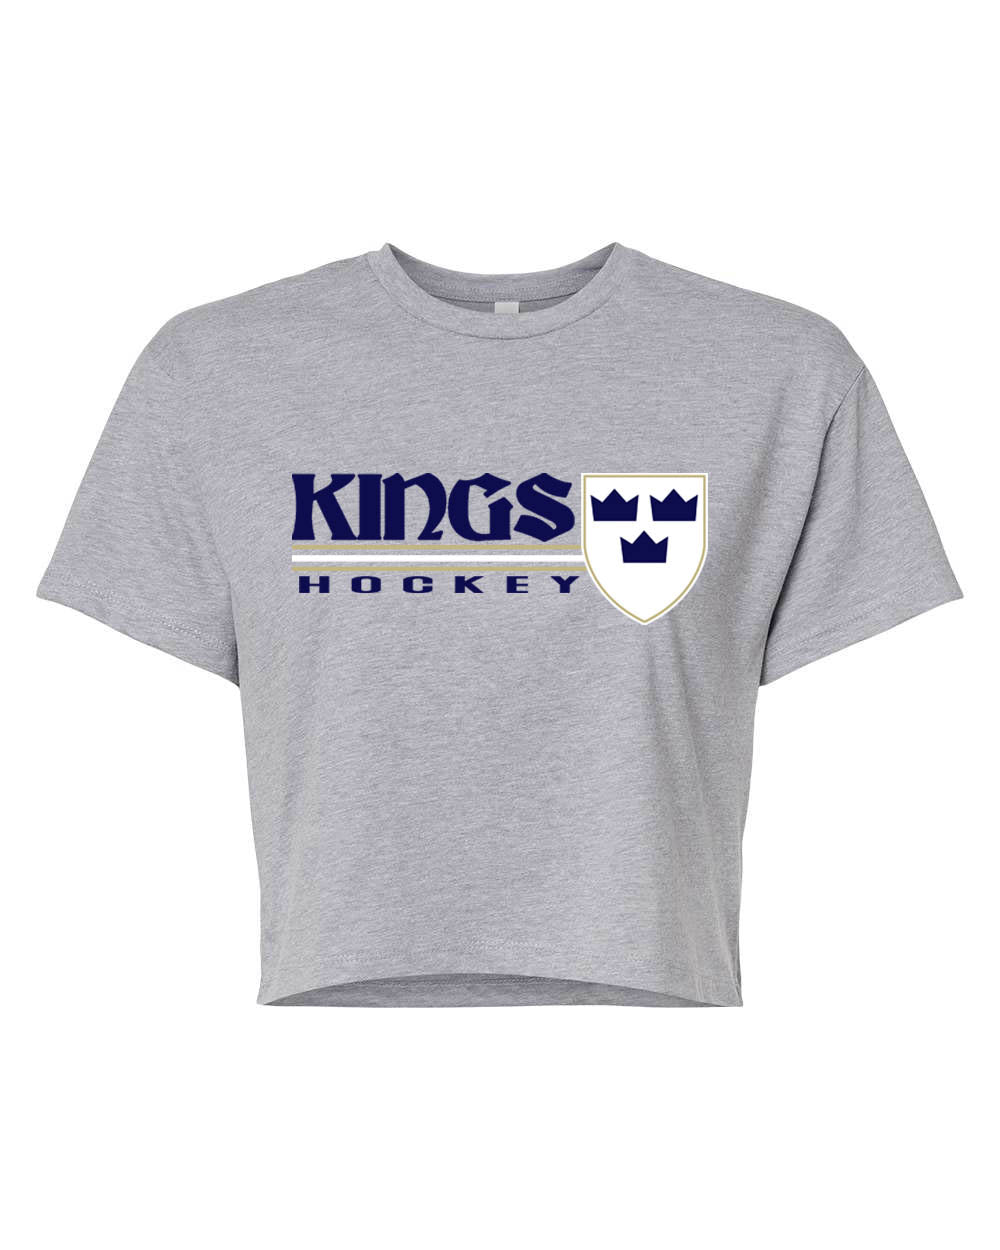 Kings Hockey Design 3 crop top